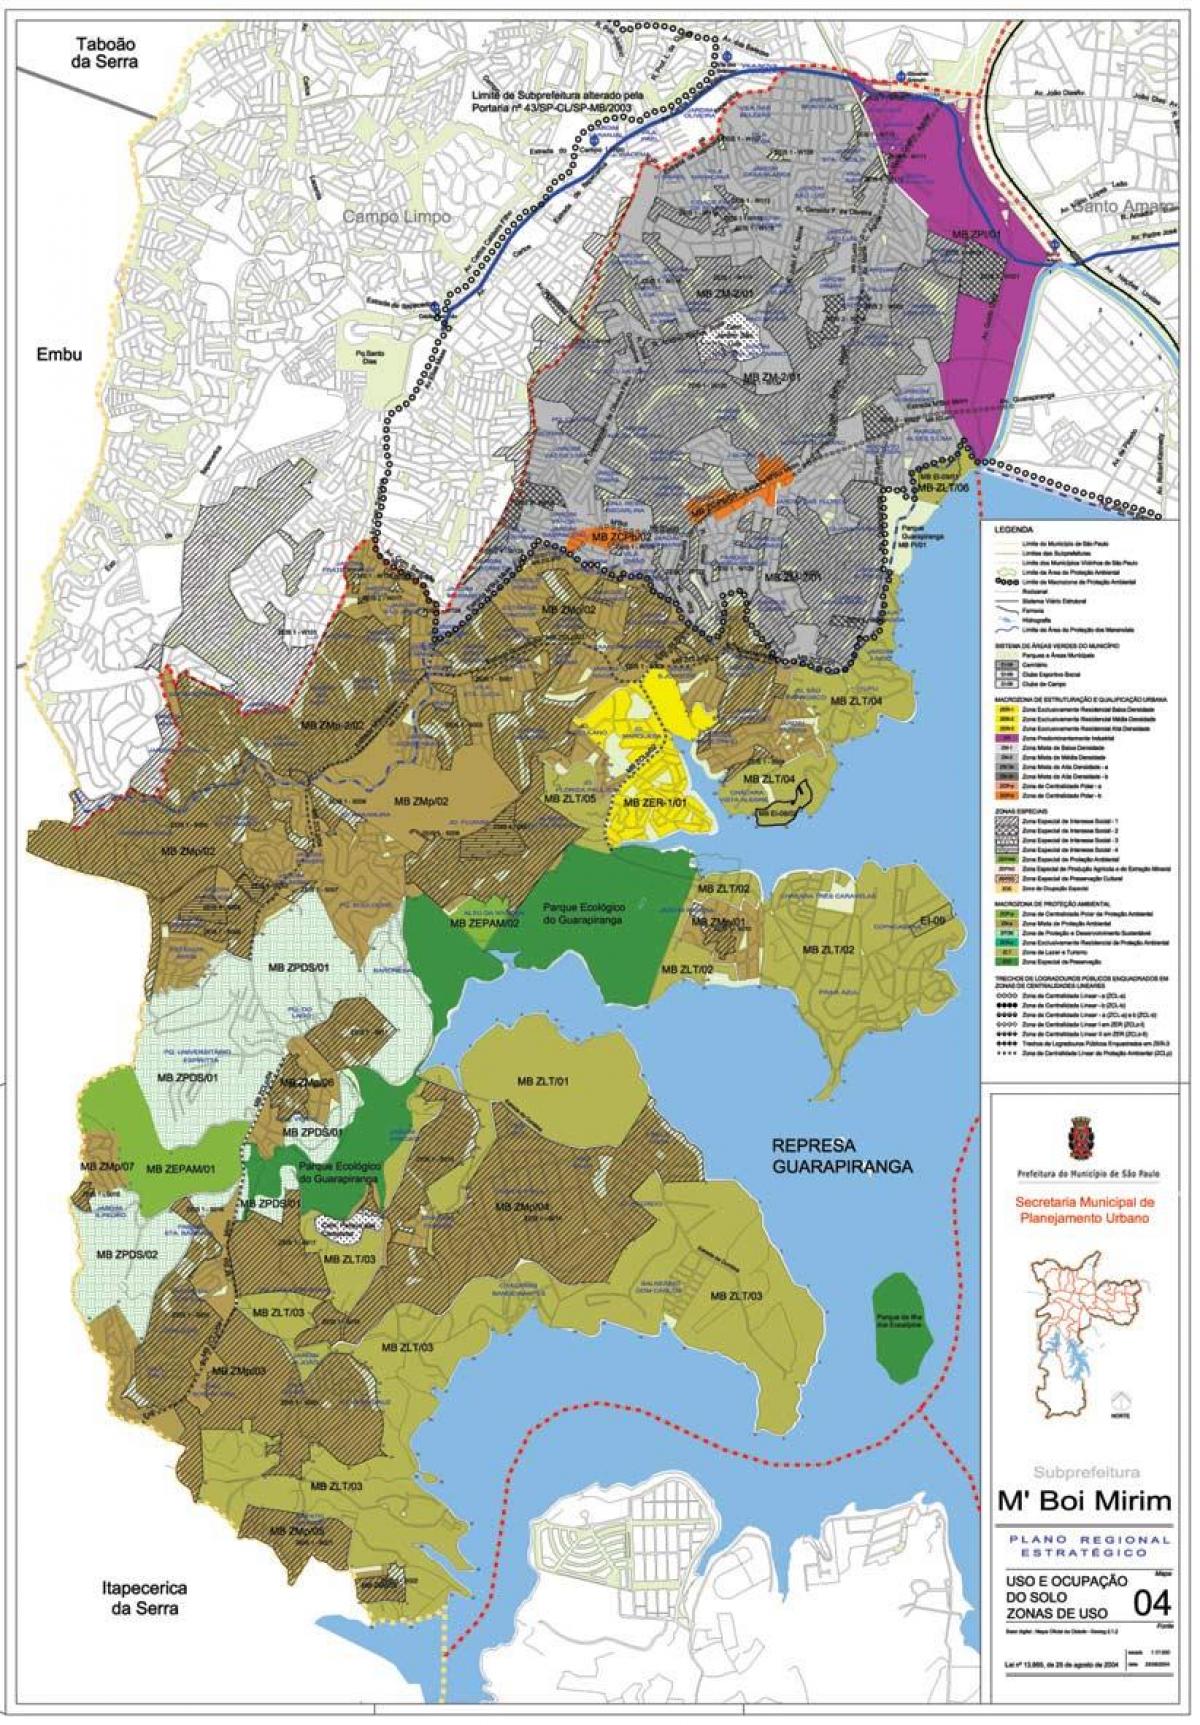 Žemėlapis M'Boi Mirim San Paulas - Okupacijos dirvožemio